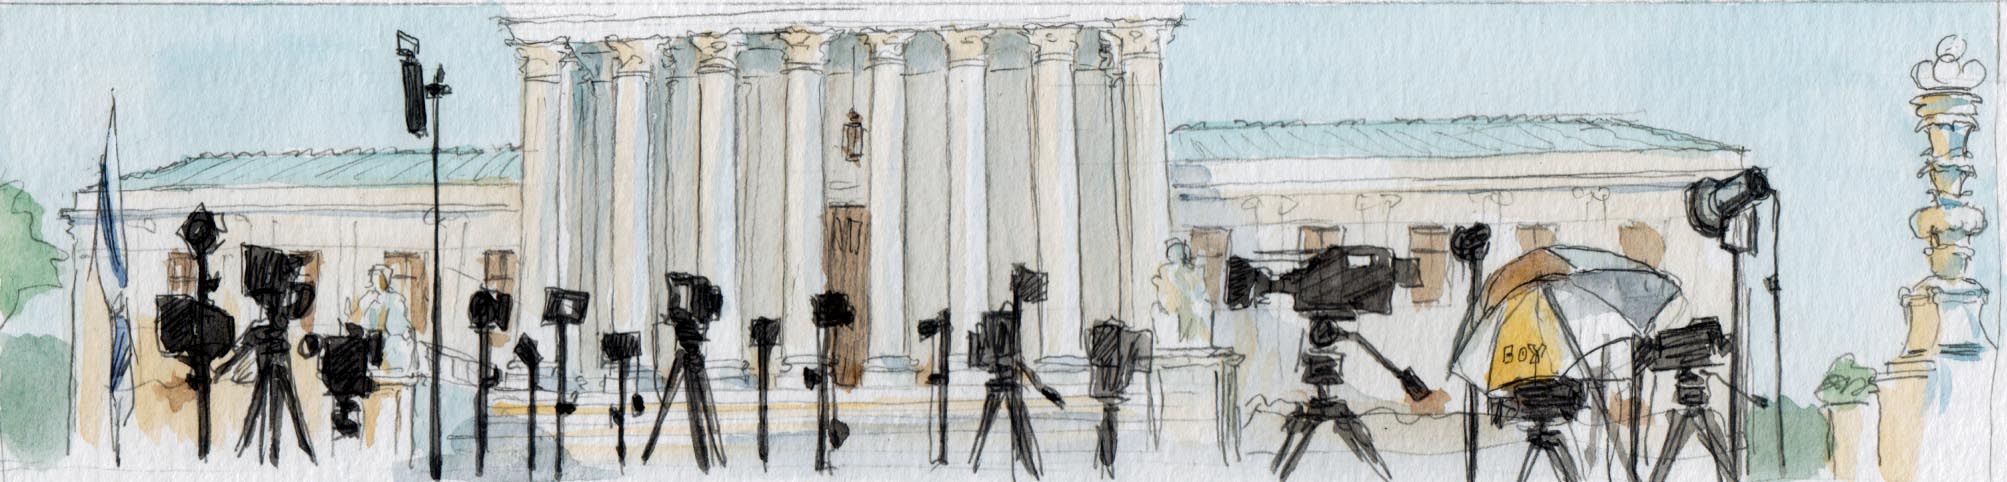 boceto de numerosas cámaras alineadas fuera de la corte suprema